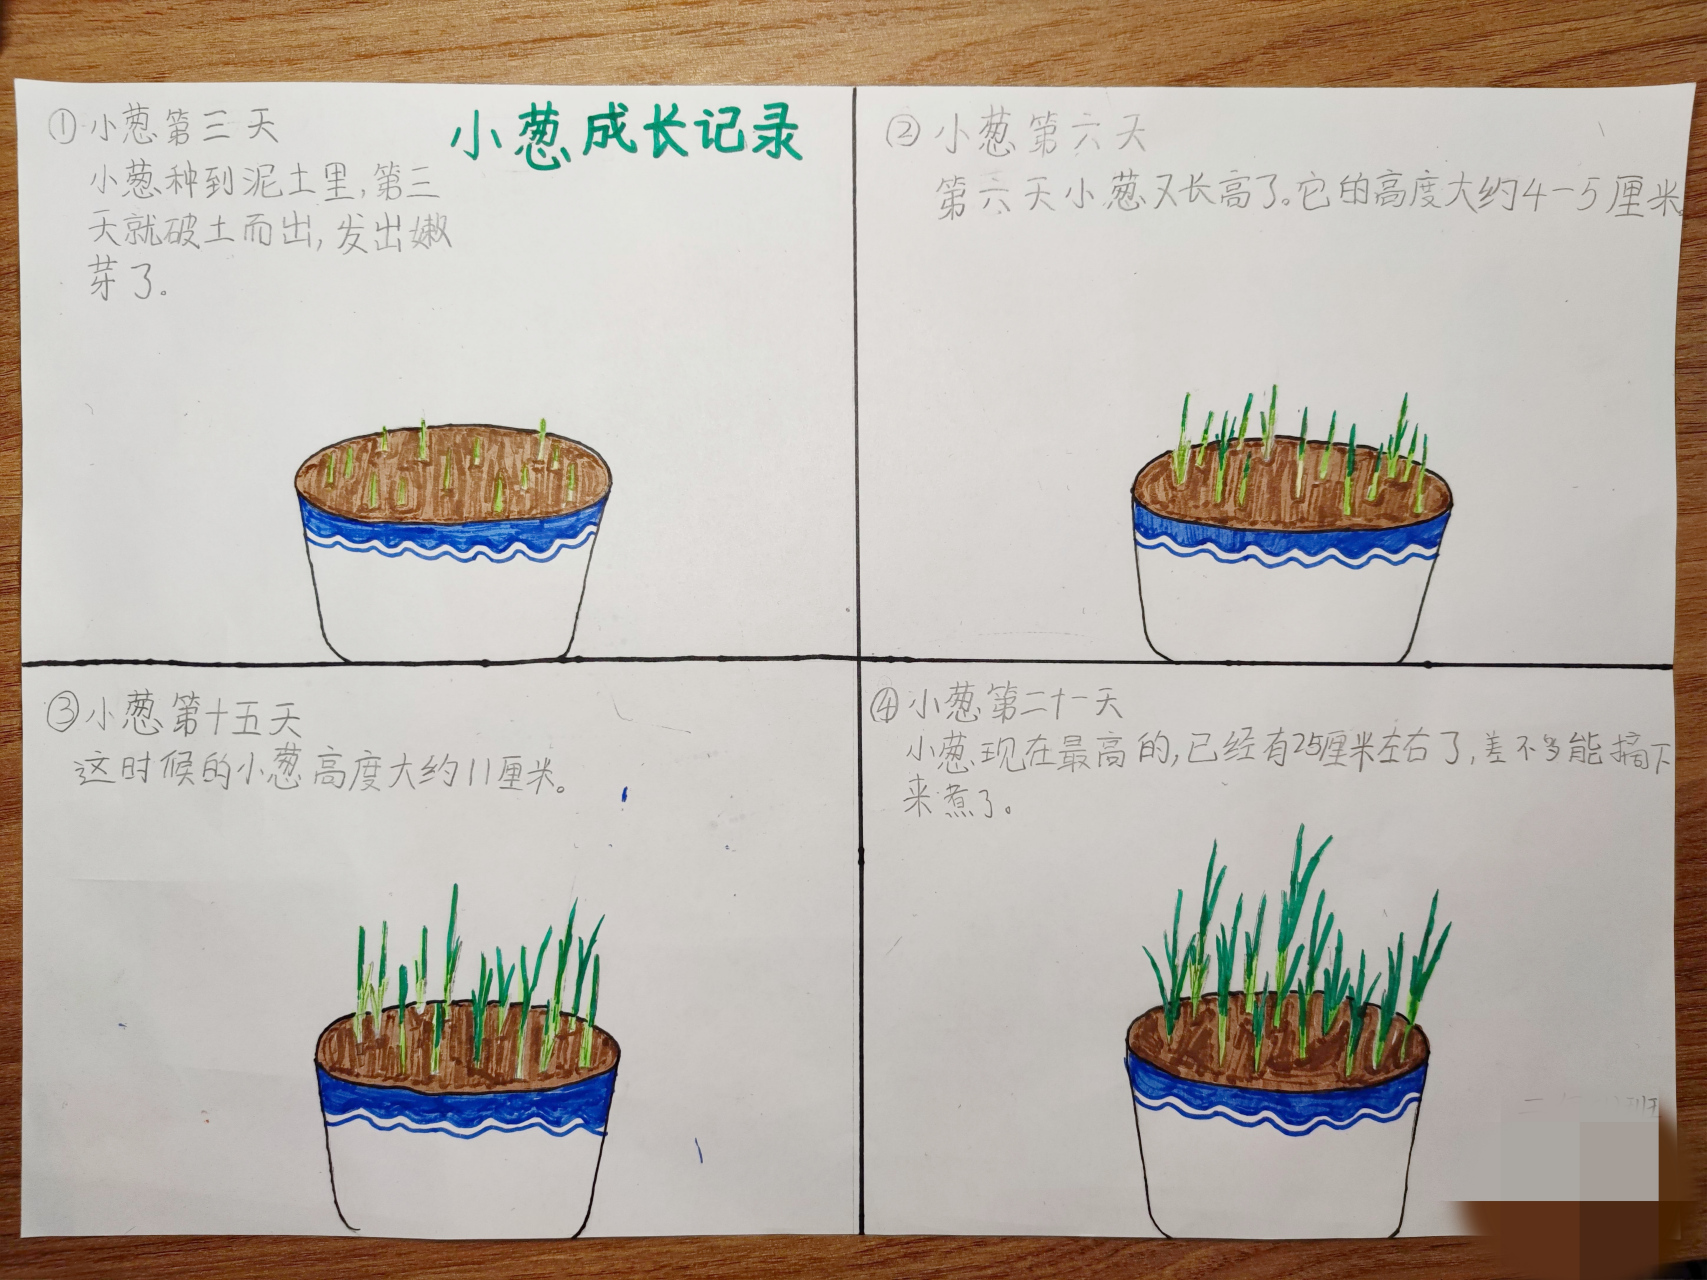 小学二年级寒假作业记录植物的生长过程#绘画#寒假作业